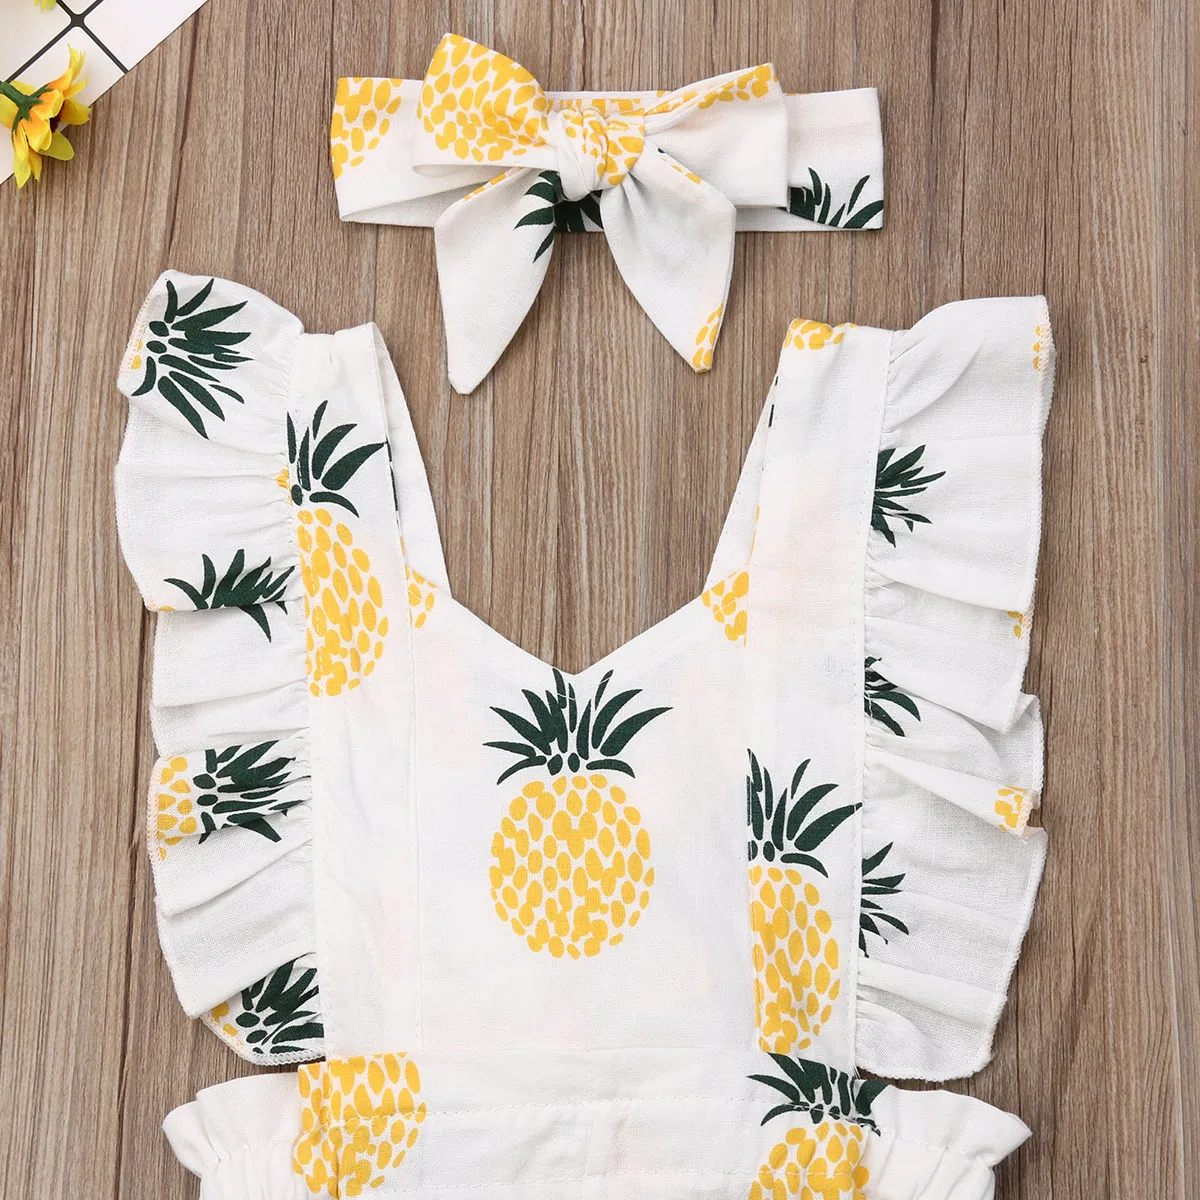 Г. Летняя одежда для малышей комбинезон с рисунком ананаса для новорожденных девочек и мальчиков желтый комбинезон с оборками и рукавами повязка на голову, праздничный наряд, комплект для детей от 0 до 24 месяцев